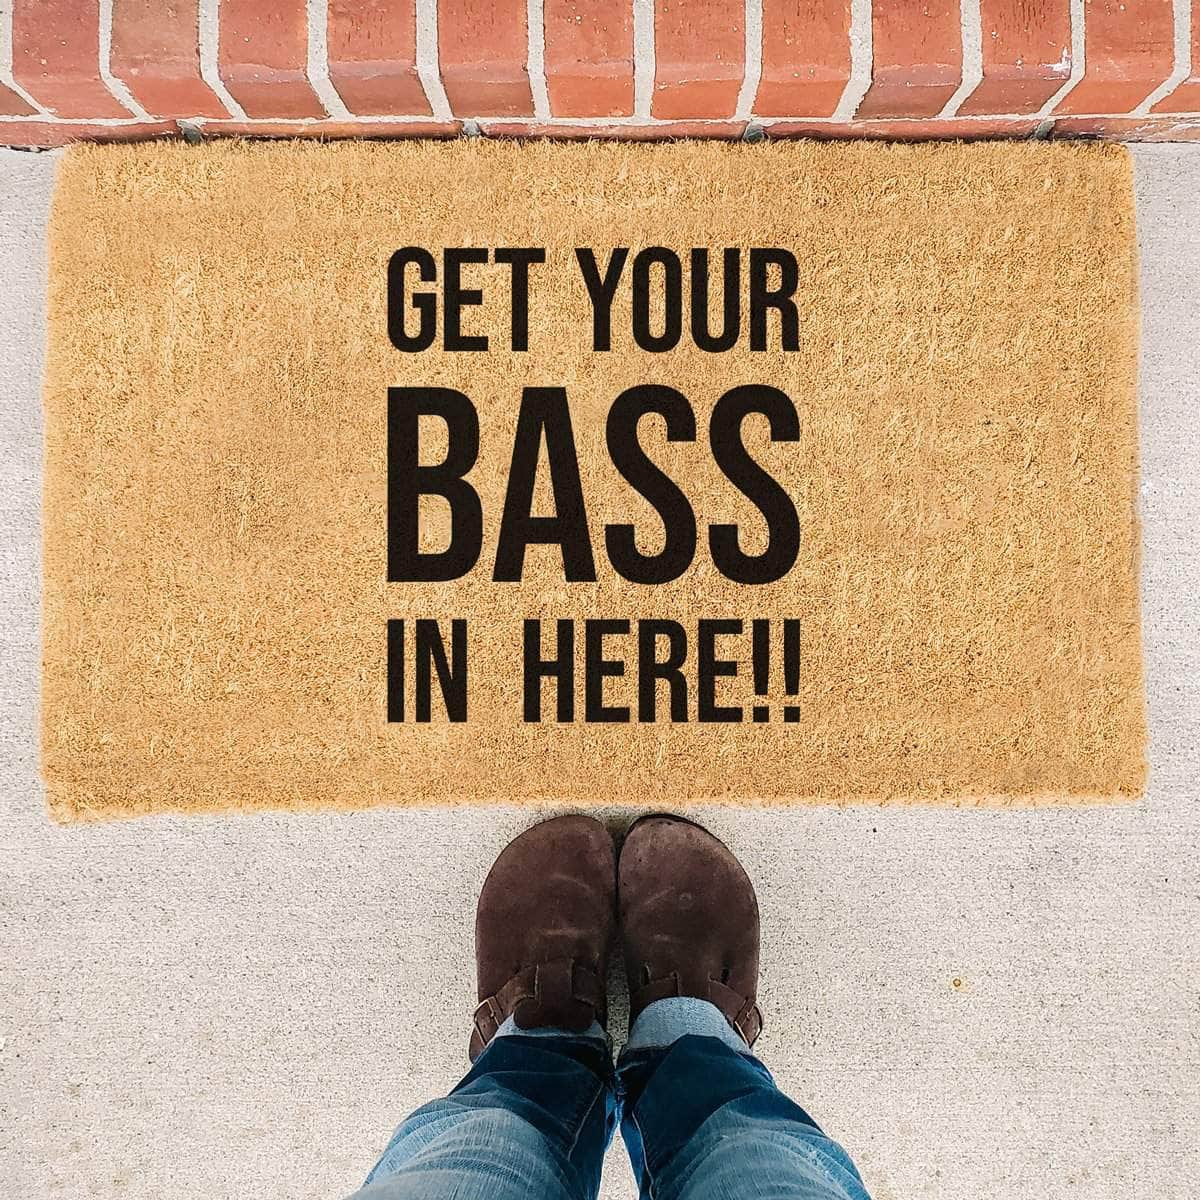 Get Your Bass In Here!! - Doormat